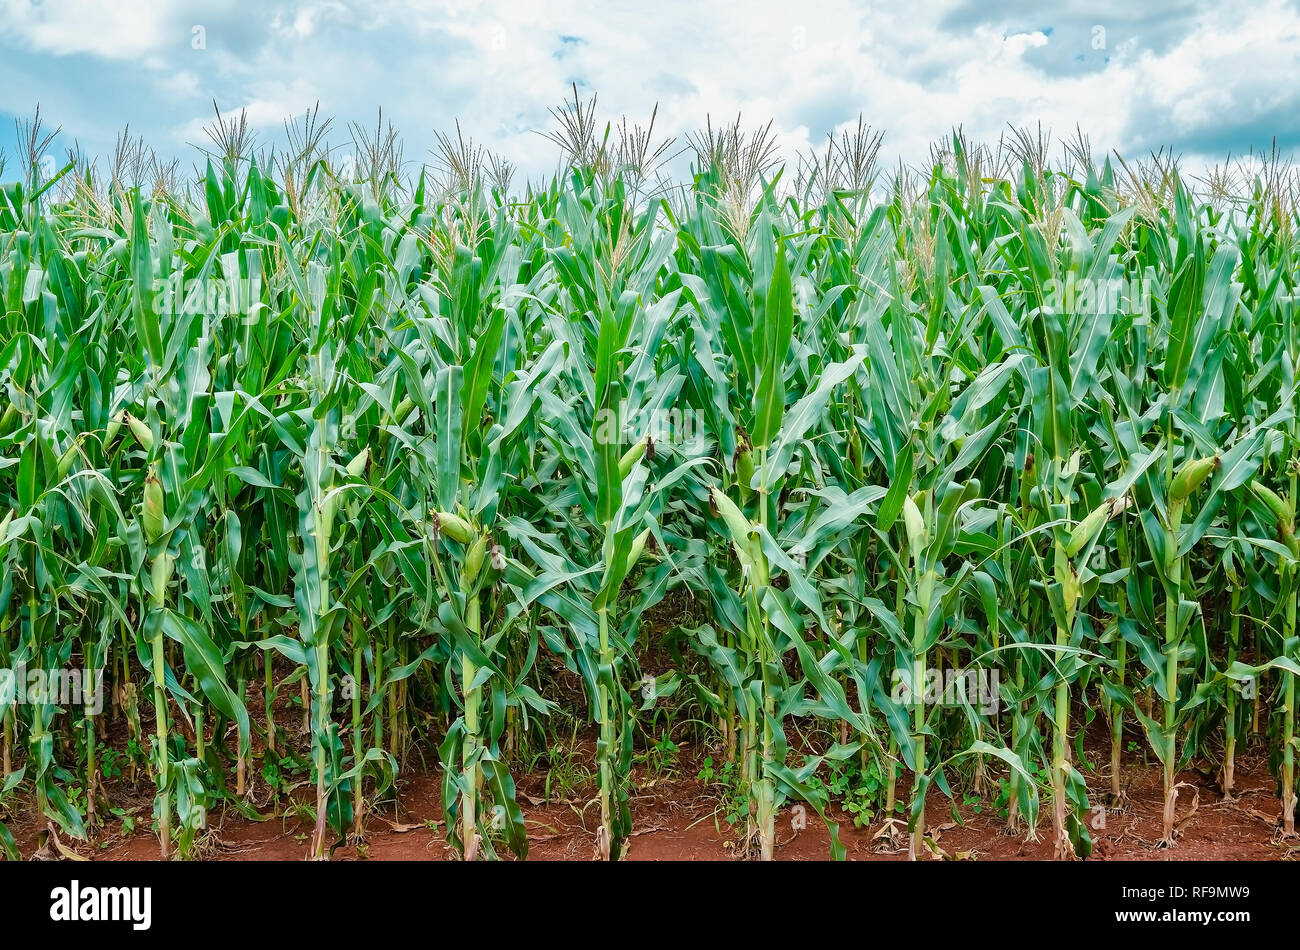 La piantagione di mais in rapida crescita e sano. Il fogliame verde, pannocchie in via di sviluppo. Scena di allevamento. Brasiliano della piantagione di mais. Foto Stock